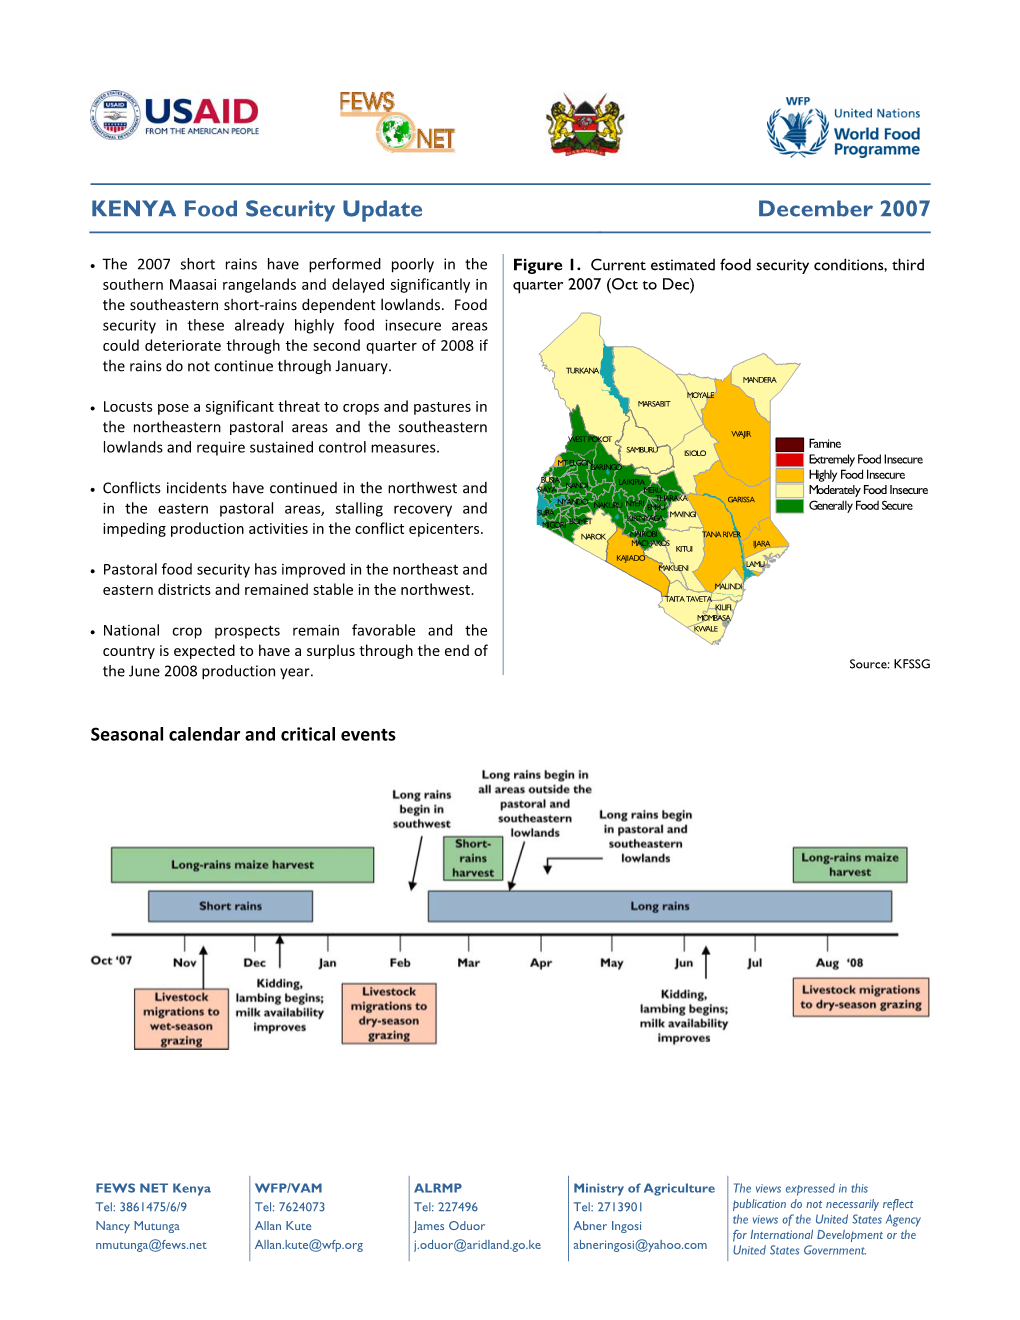 Kenya Food Security Update, December 2007